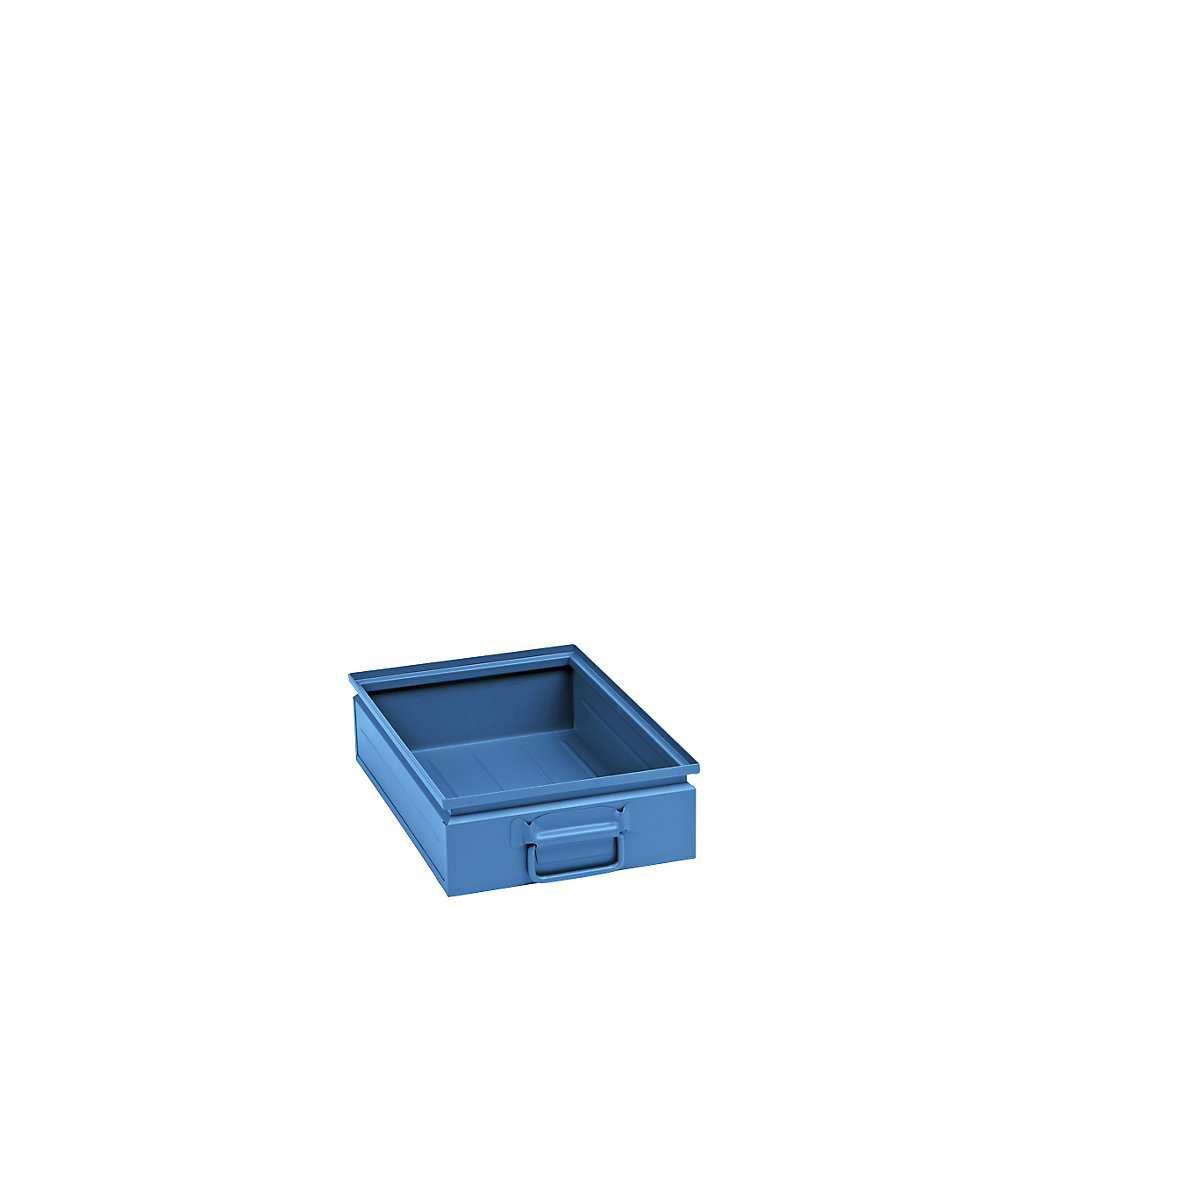 Skrzynka do ustawiania w stos z blachy stalowej, poj. ok. 15 l, jasnoniebieski, RAL 5012